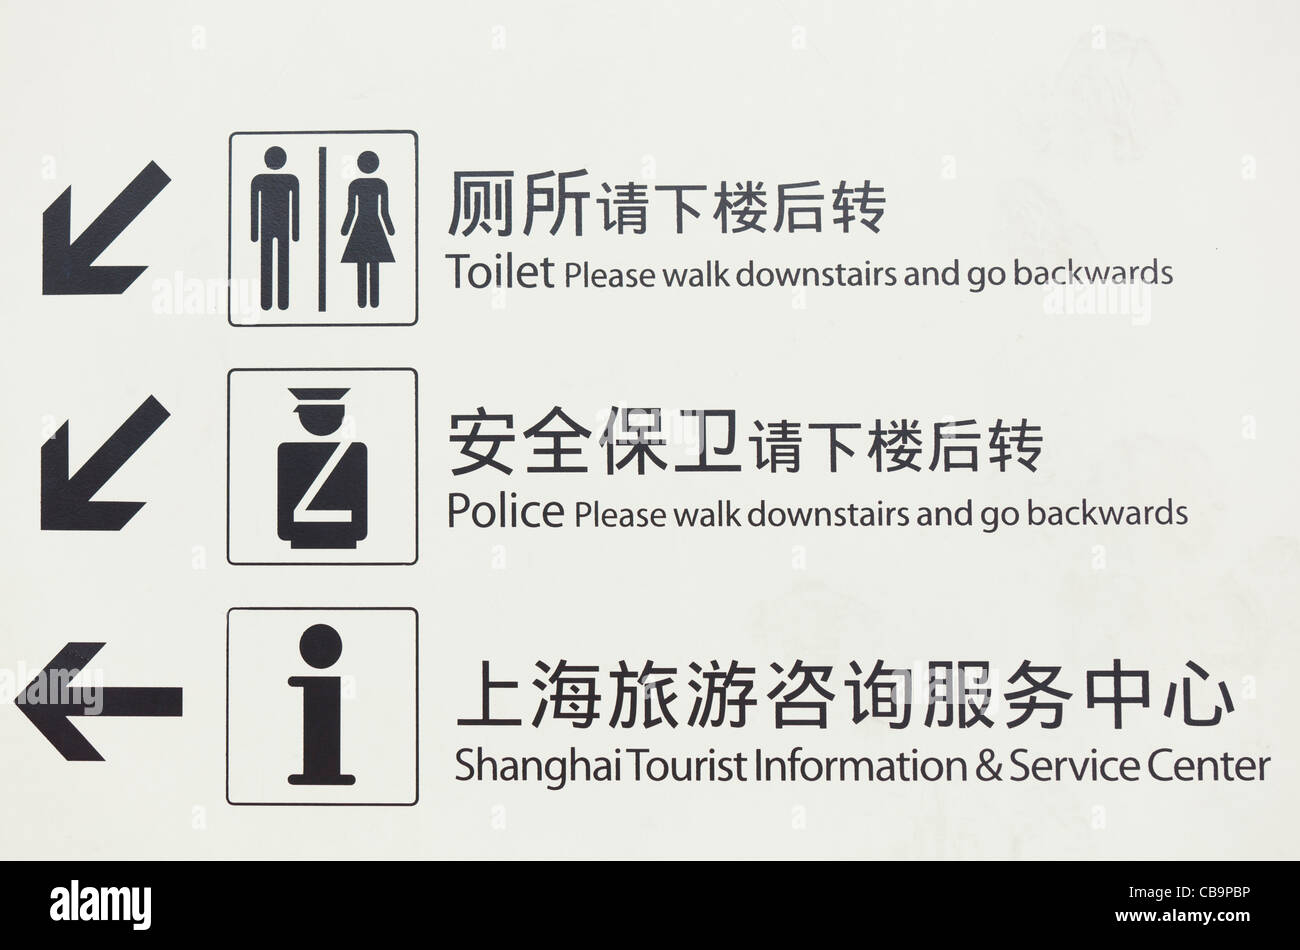 verwirrende Schilder in shanghai Übersetzungen aus dem chinesischen ins englische zweisprachige Hinweise Stockfoto